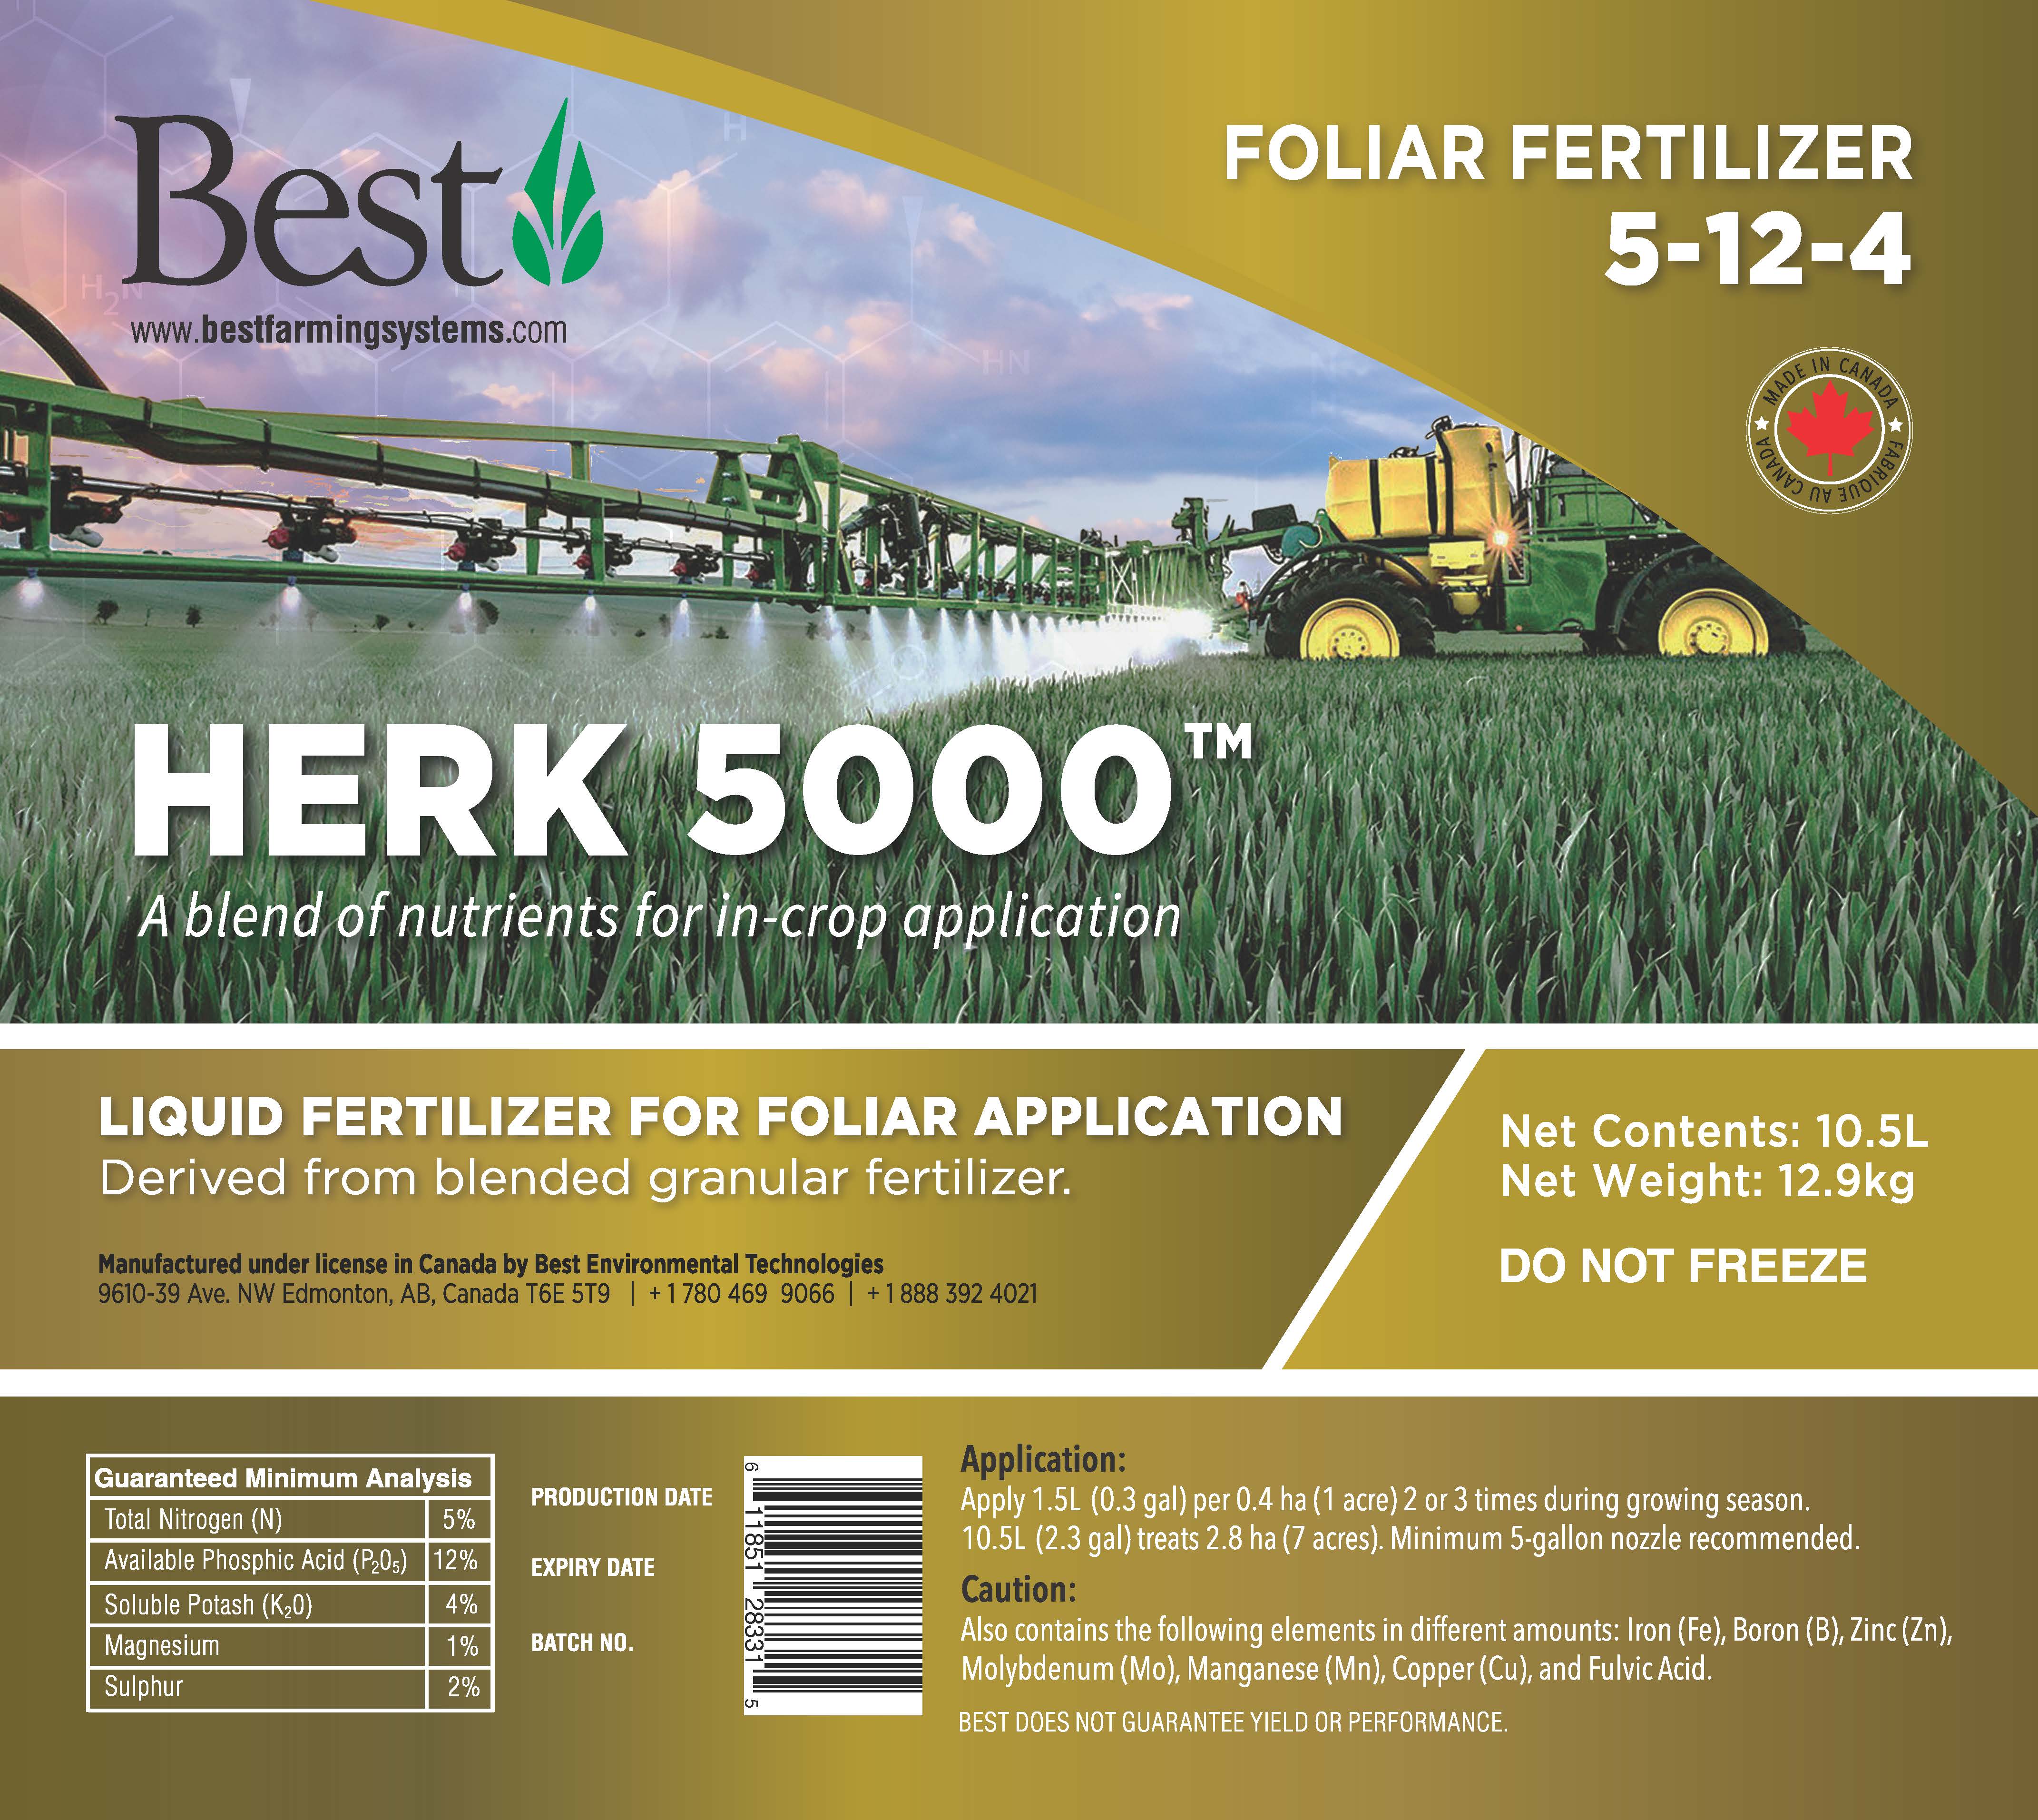 Foliar Fertilizer used on Canola, Hay land and Pastures